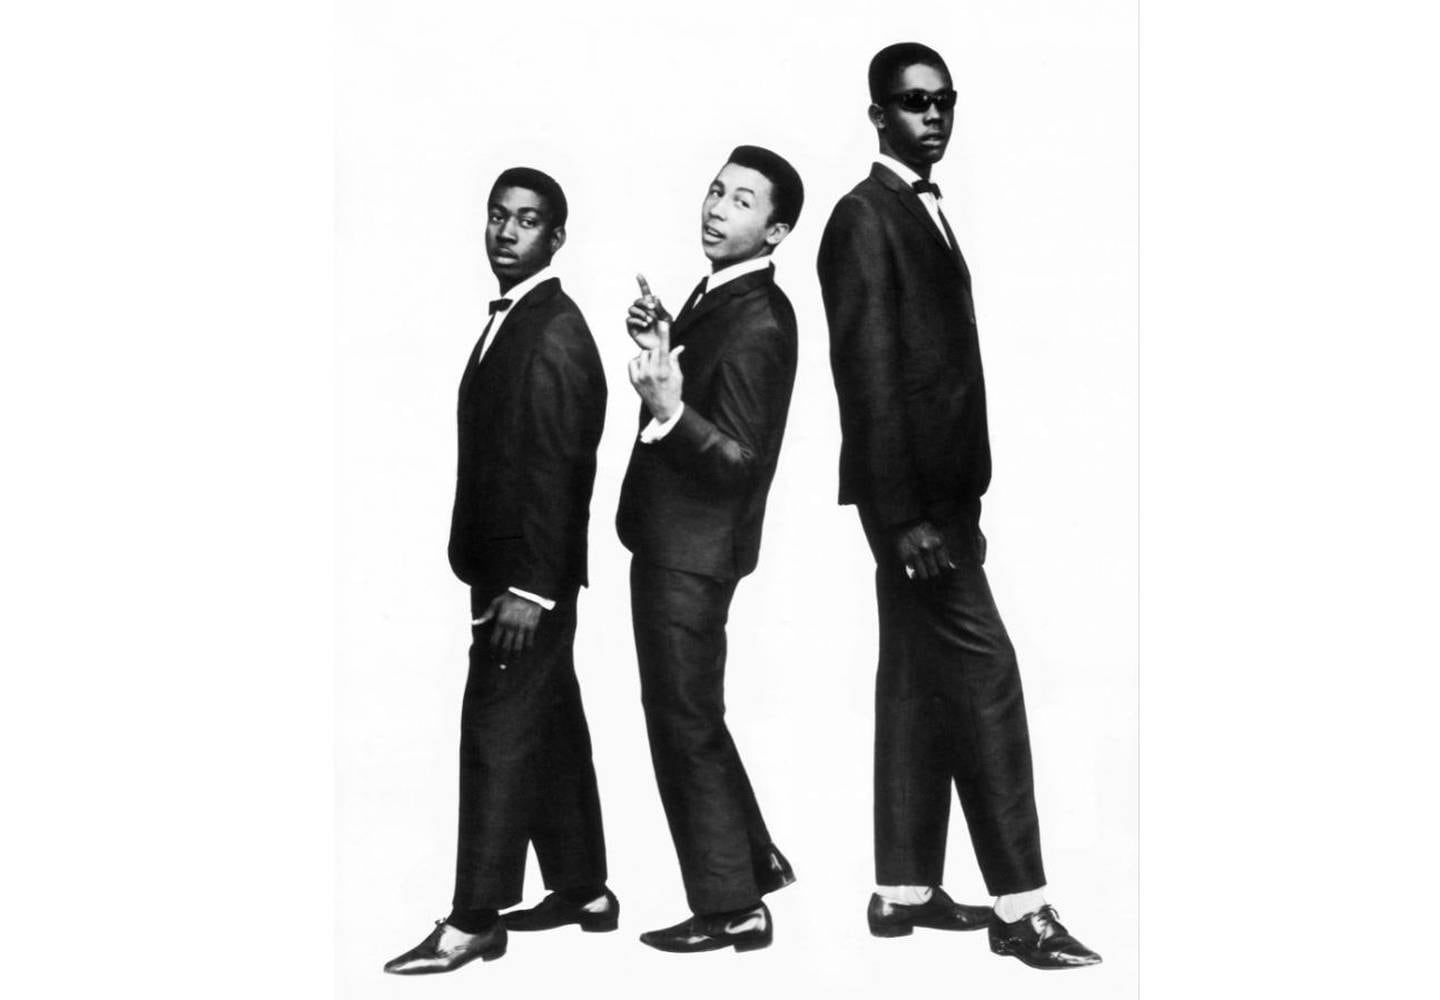 The Wailers med sin klassiske look på 60-tallet - Bunny Wailer, Bob Marley og Peter Tosh.